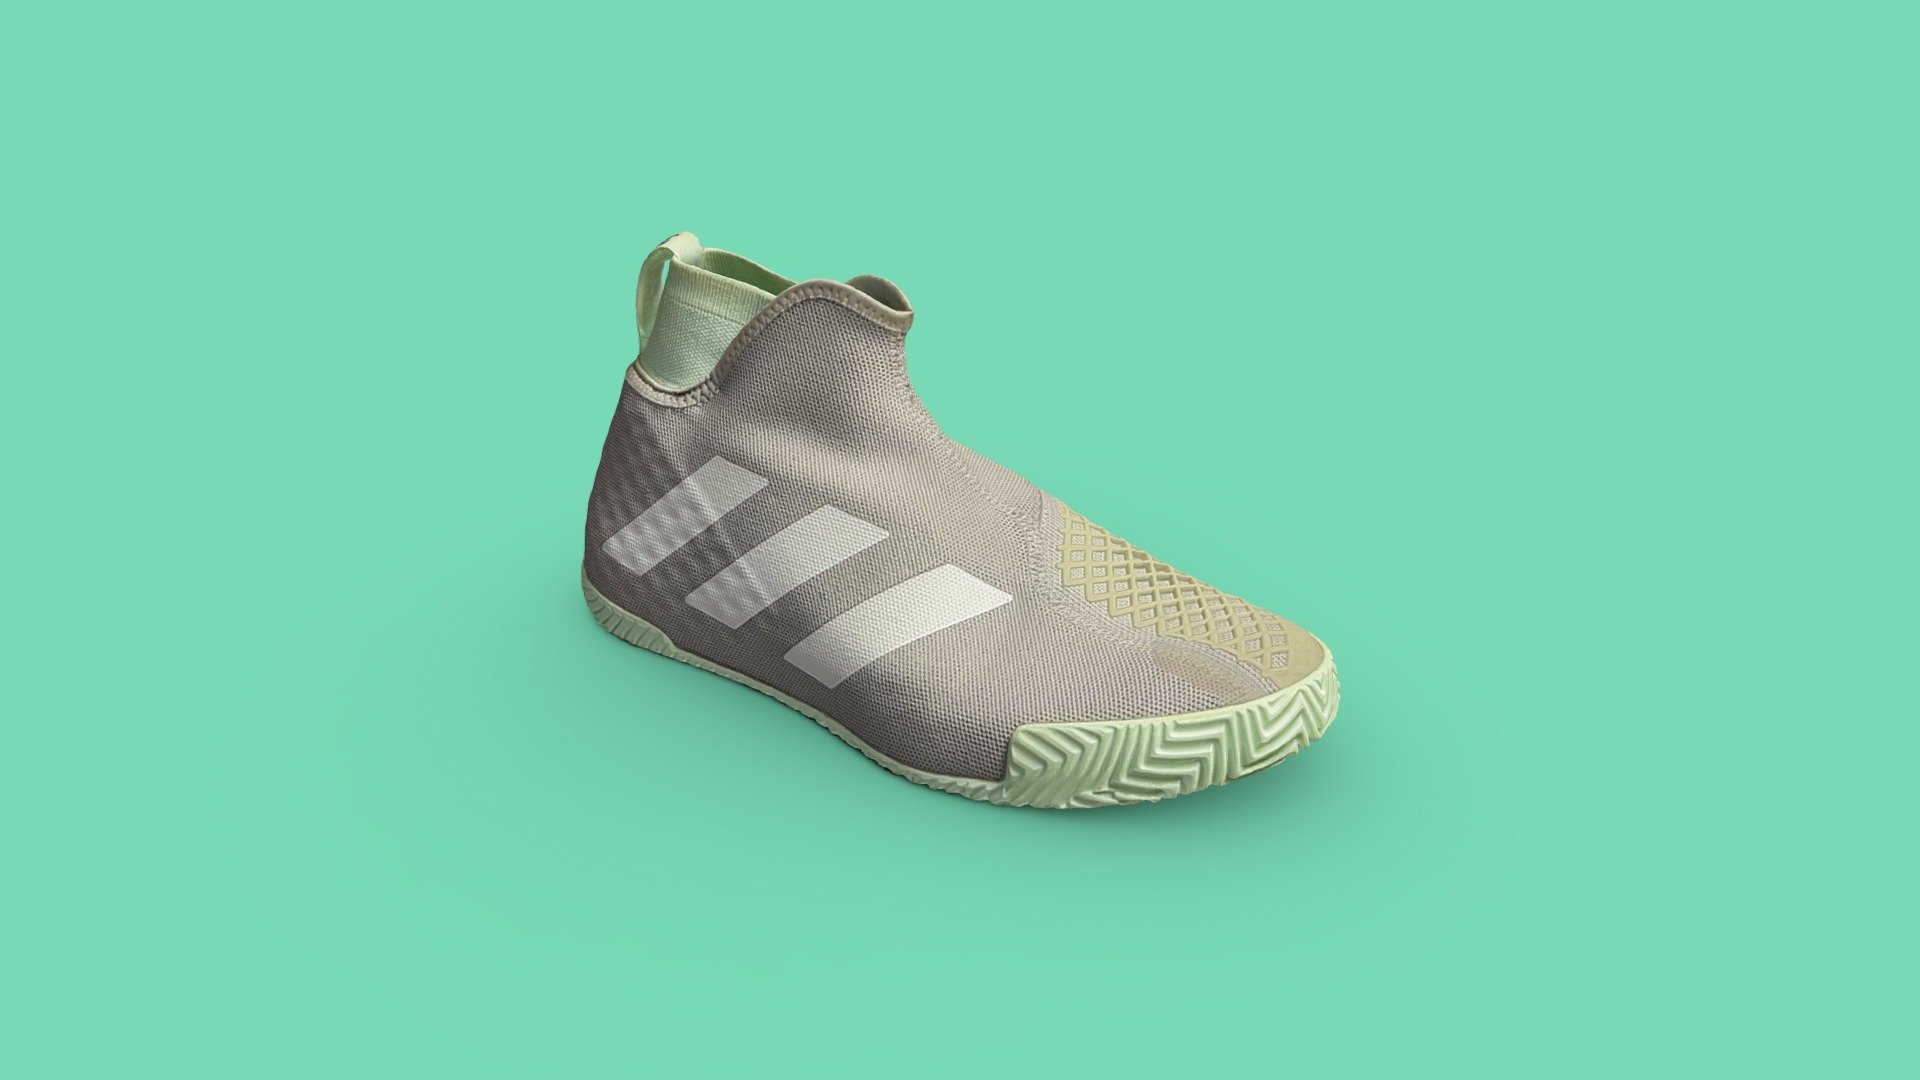 adidas barricade sneakers - ADIDAS BARRICADE SNEAKERS - 3D model by les83machines 3d model